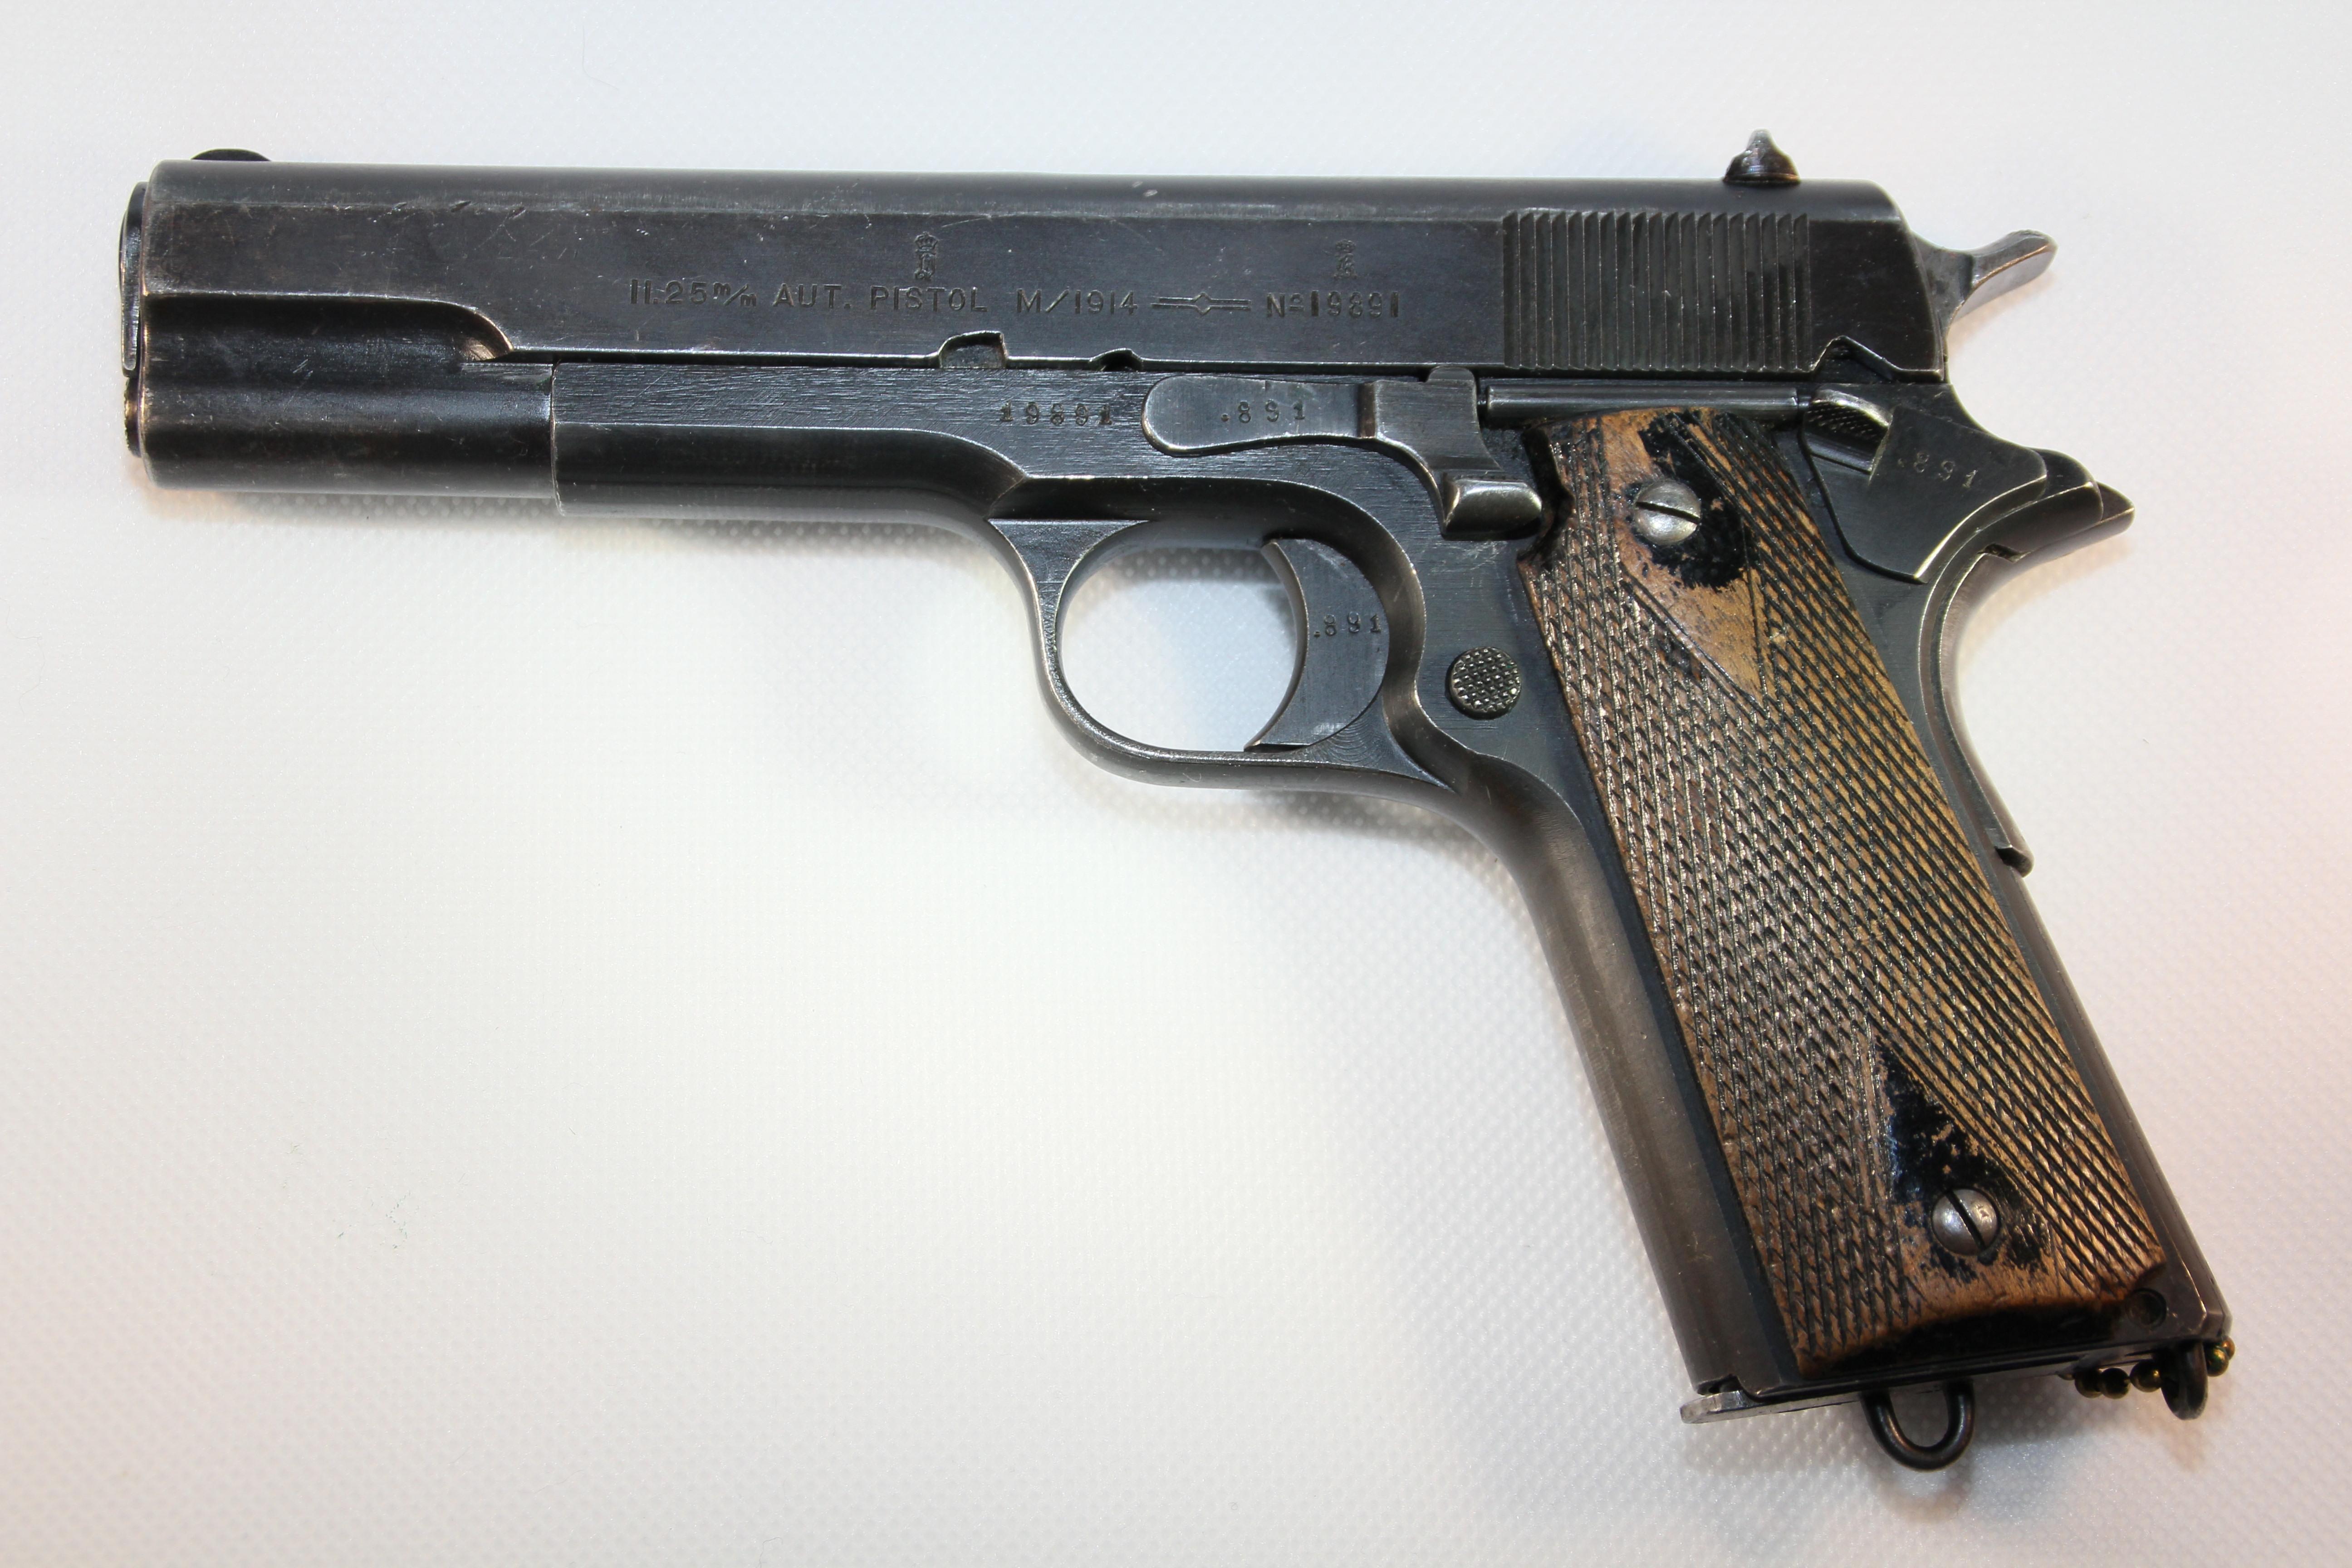 ./guns/pistol/bilder/Pistol-Kongsberg-M1914-1928-1.JPG